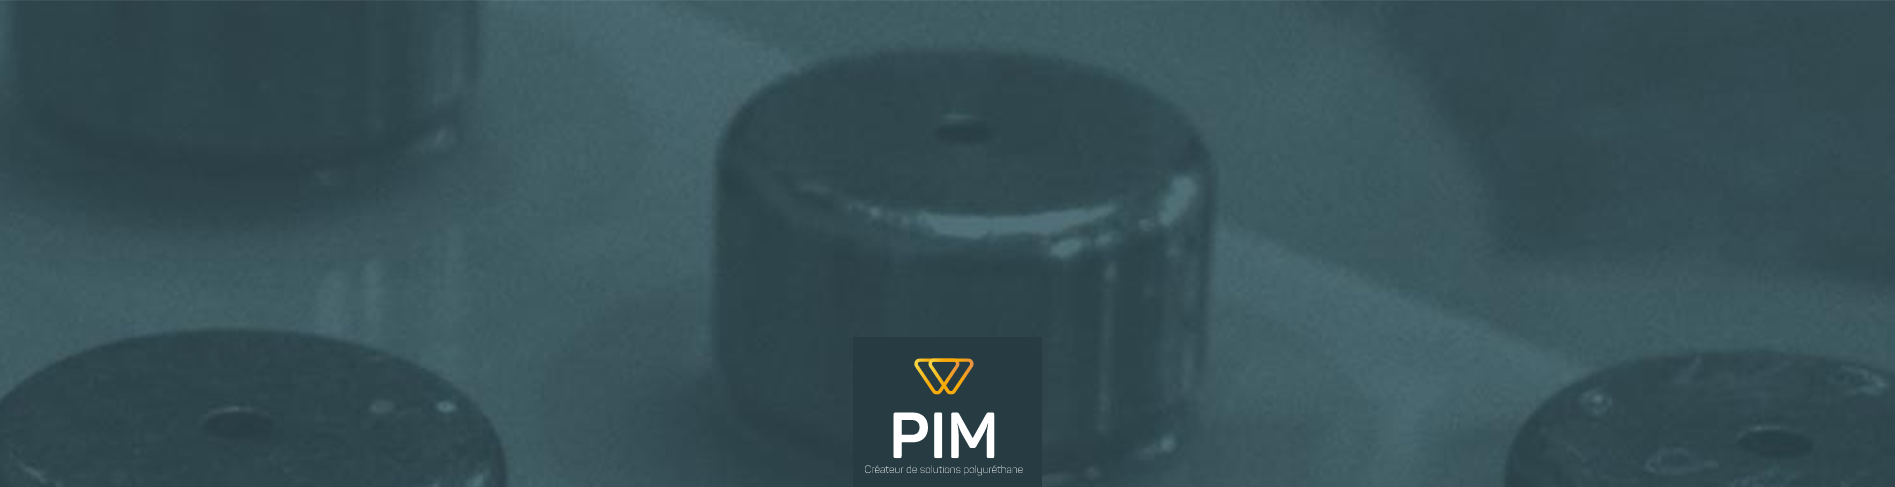 PIM industrie